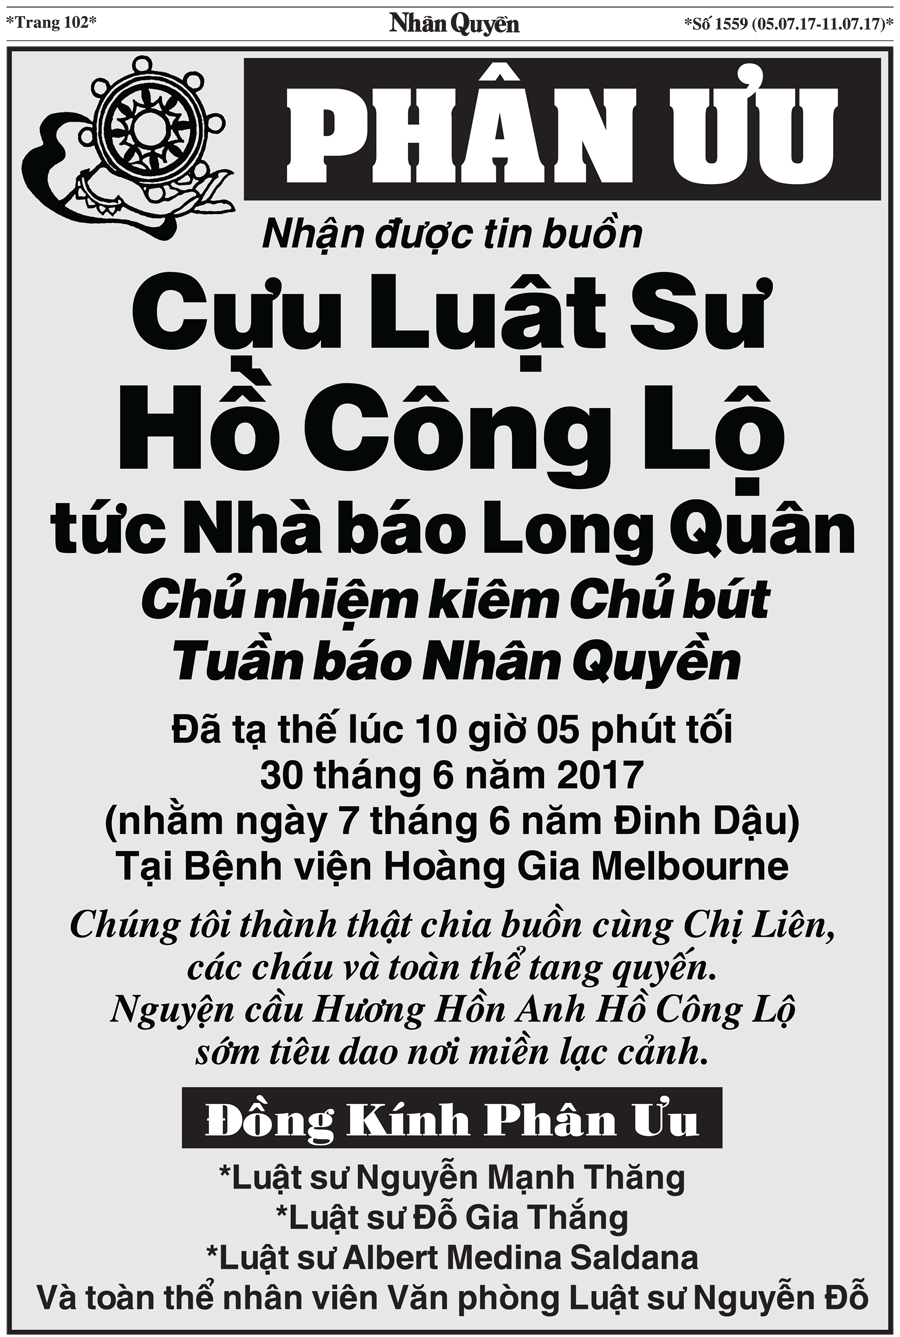 Bao Nhan Quyen SoDac Biet ve Chu But Ho Cong Lo (15)